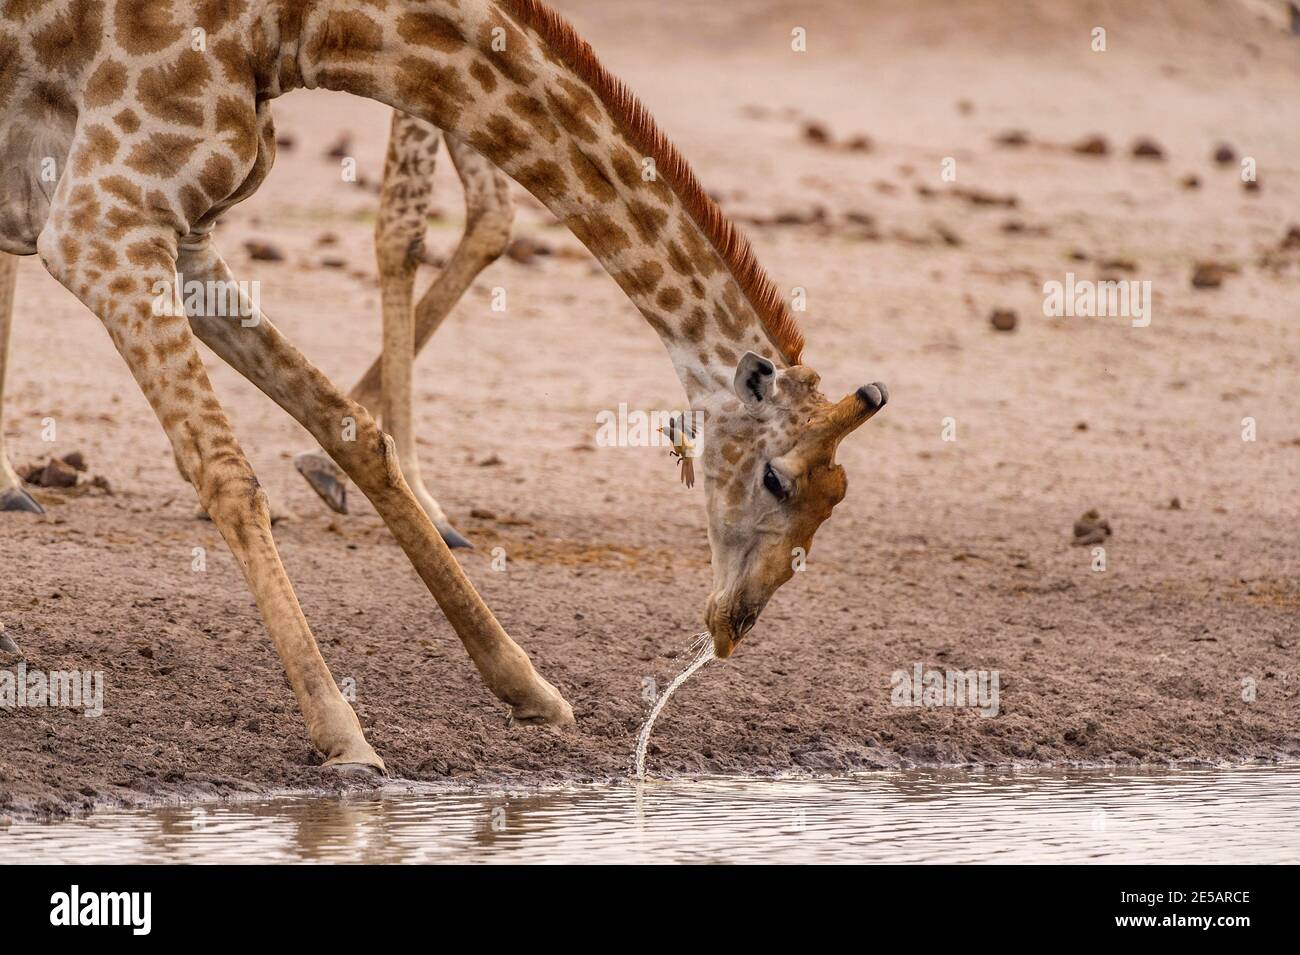 A Giraffe, Giraffa camelopardalis giraffa, seen drinking in Zimbabwe's Hwange National Park. Stock Photo